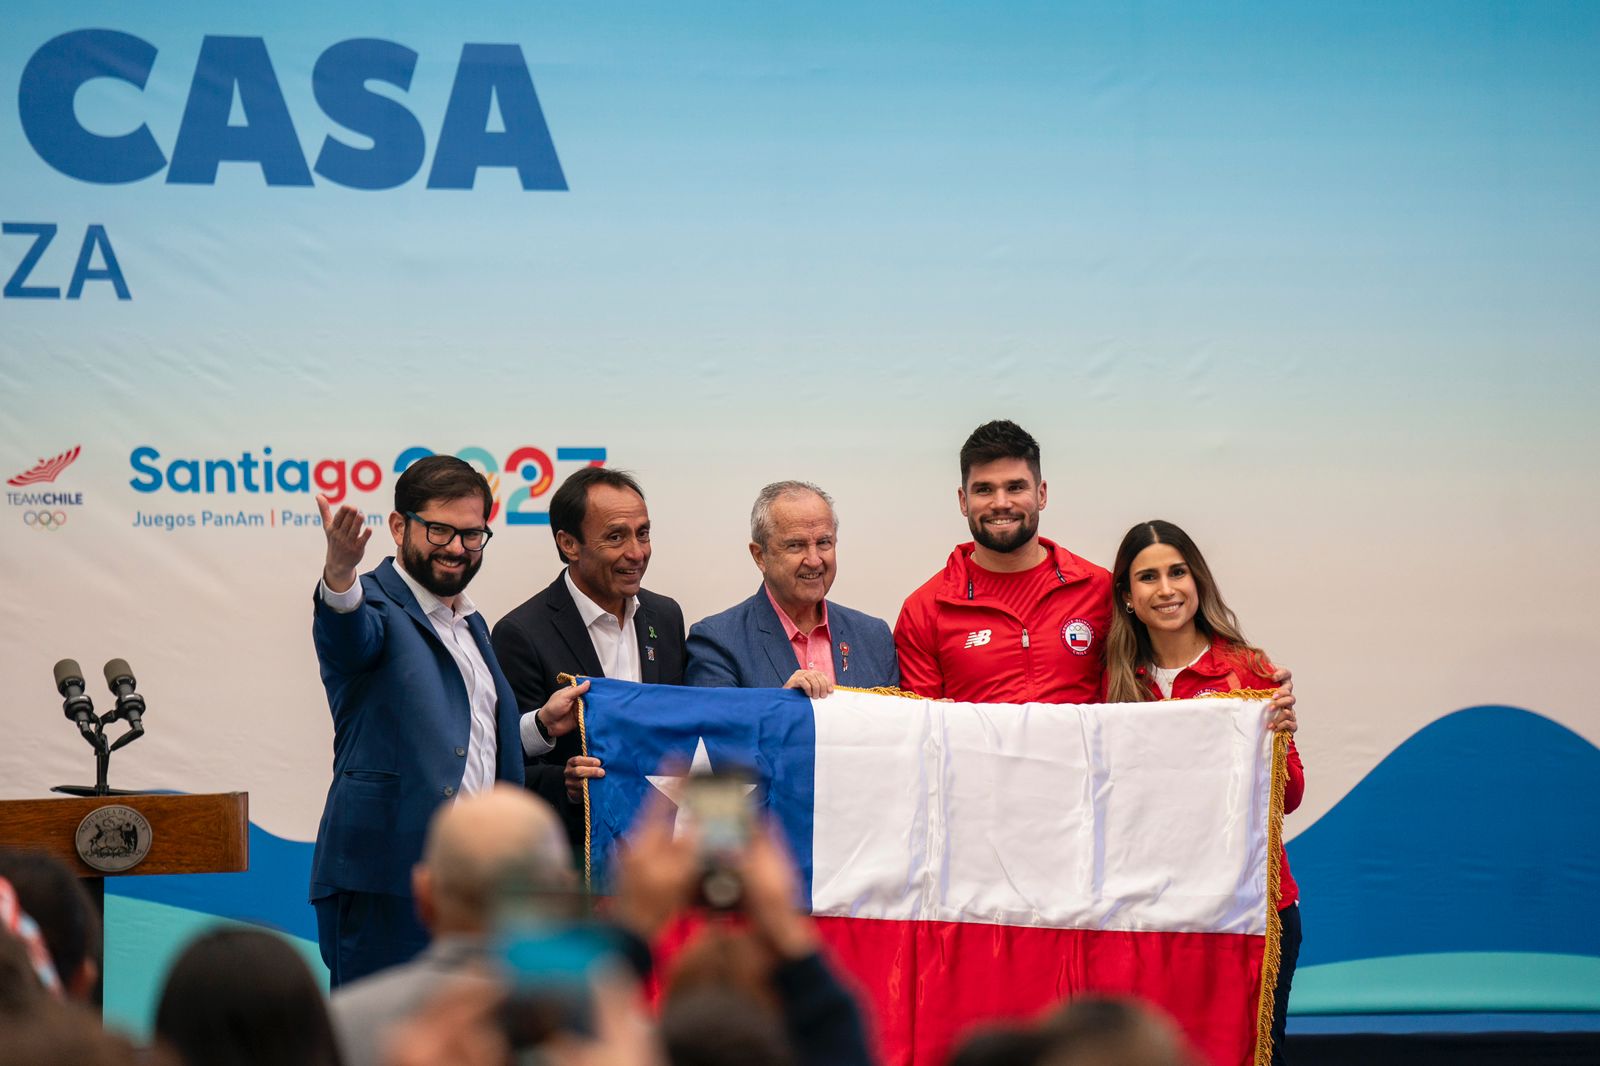 El Presidente Gabriel Boric compartió con el Team Chile en la previa de Santiago 2023